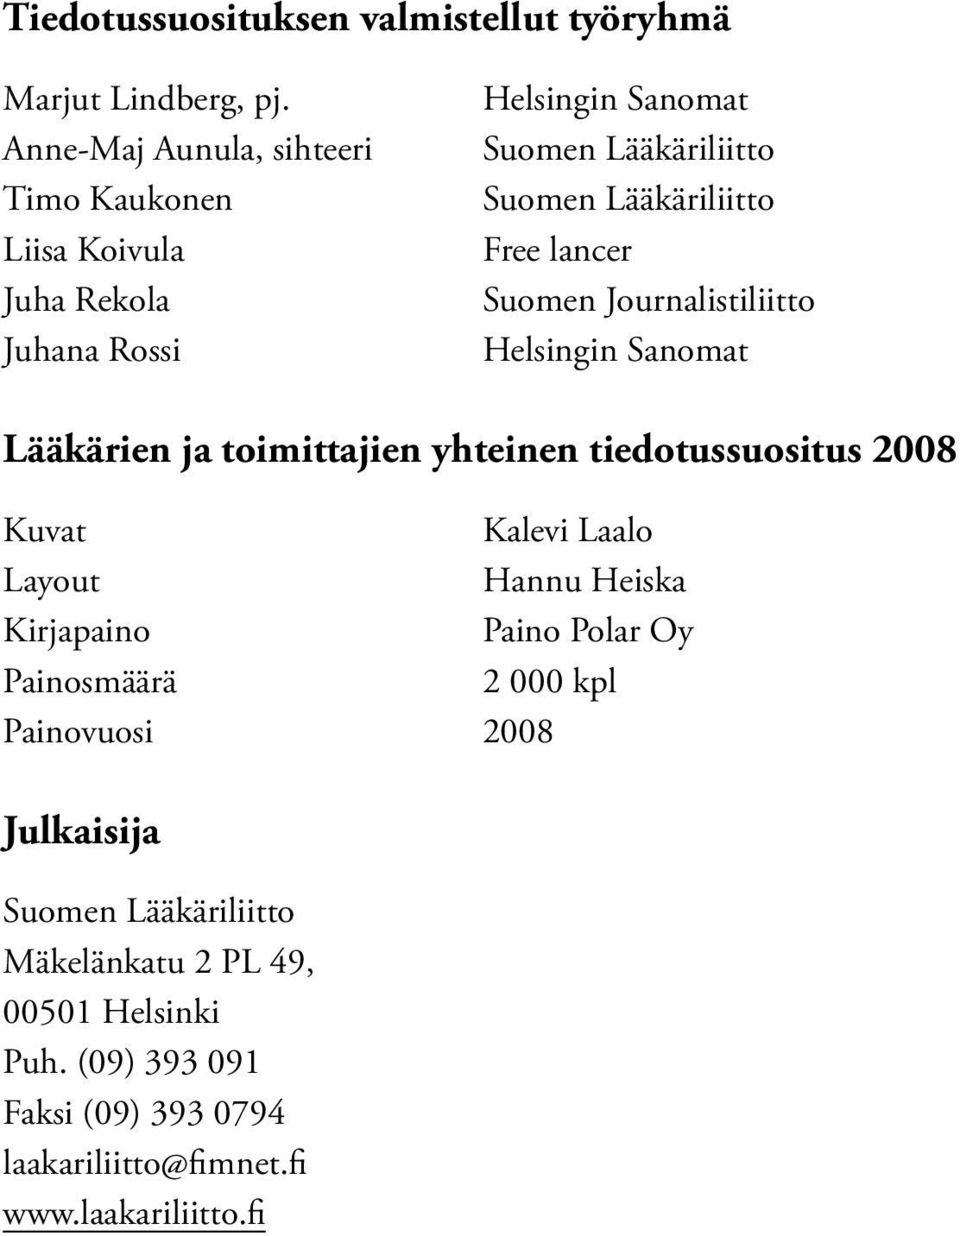 Free lancer Suomen Journalistiliitto Helsingin Sanomat Lääkärien ja toimittajien yhteinen tiedotussuositus 2008 Kuvat Kalevi Laalo Layout